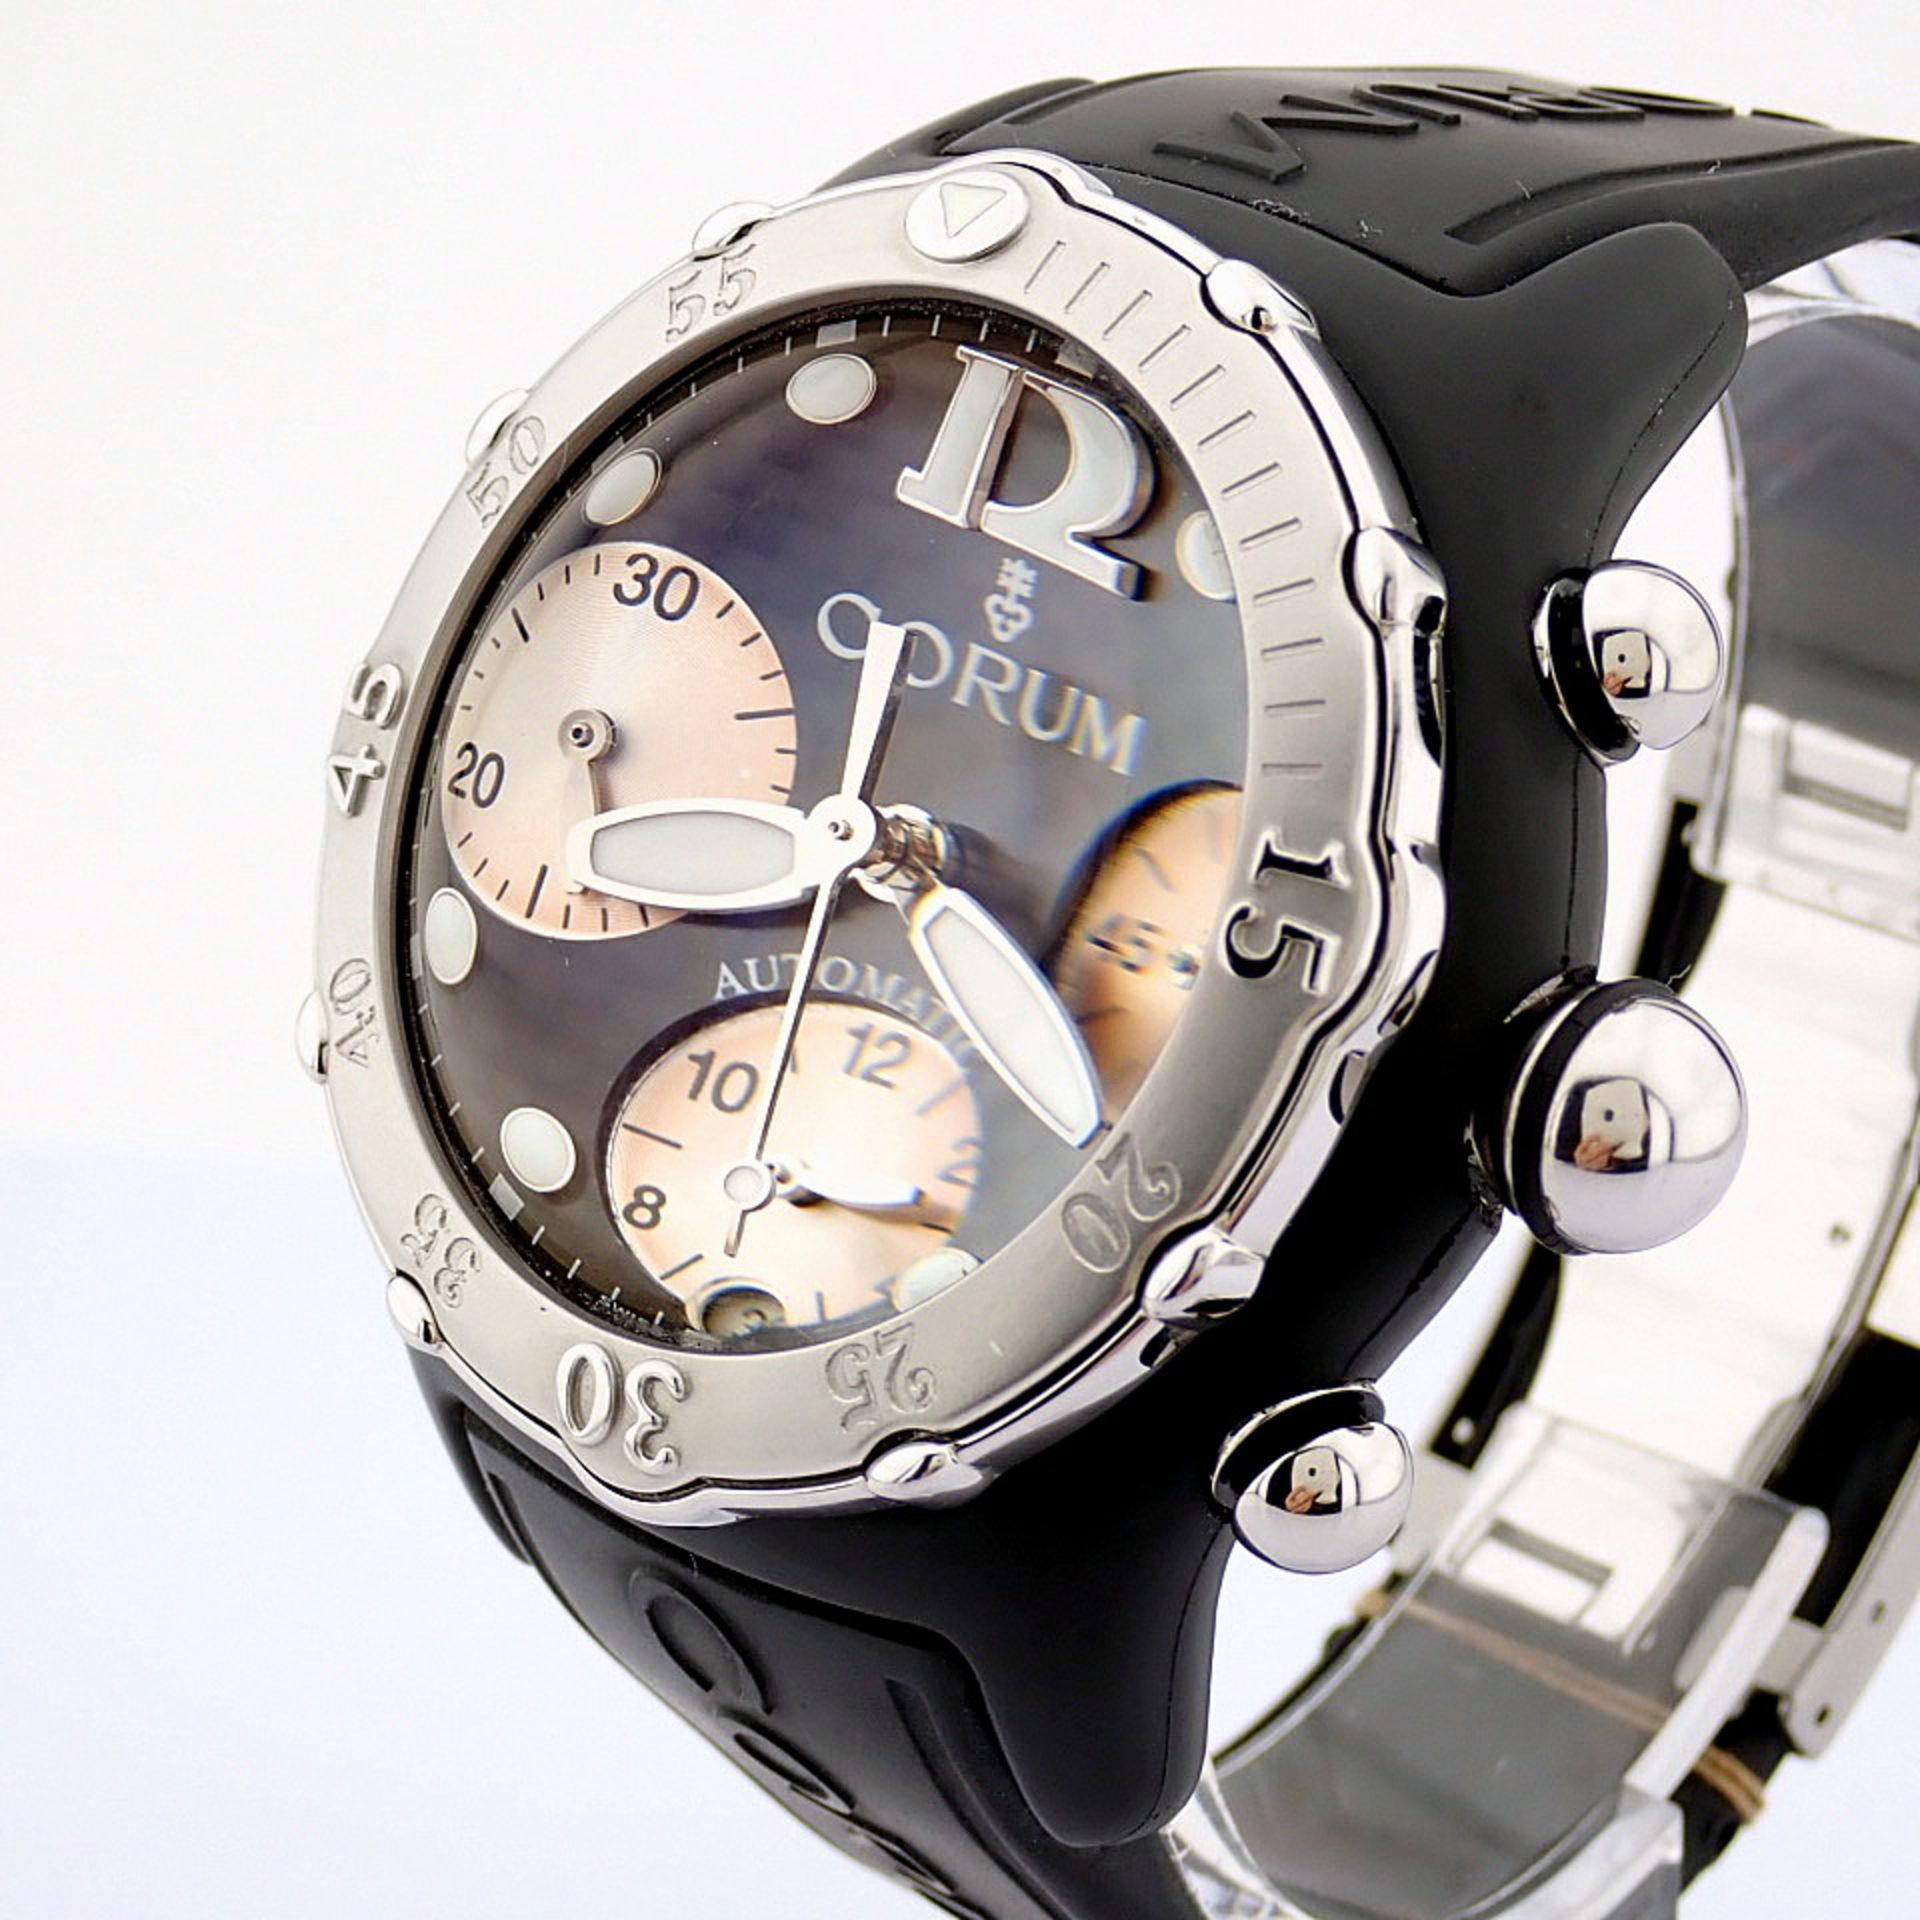 Corum / Midnight Chronograph Diver Taucher - Gentlmen's Steel Wrist Watch - Image 9 of 12